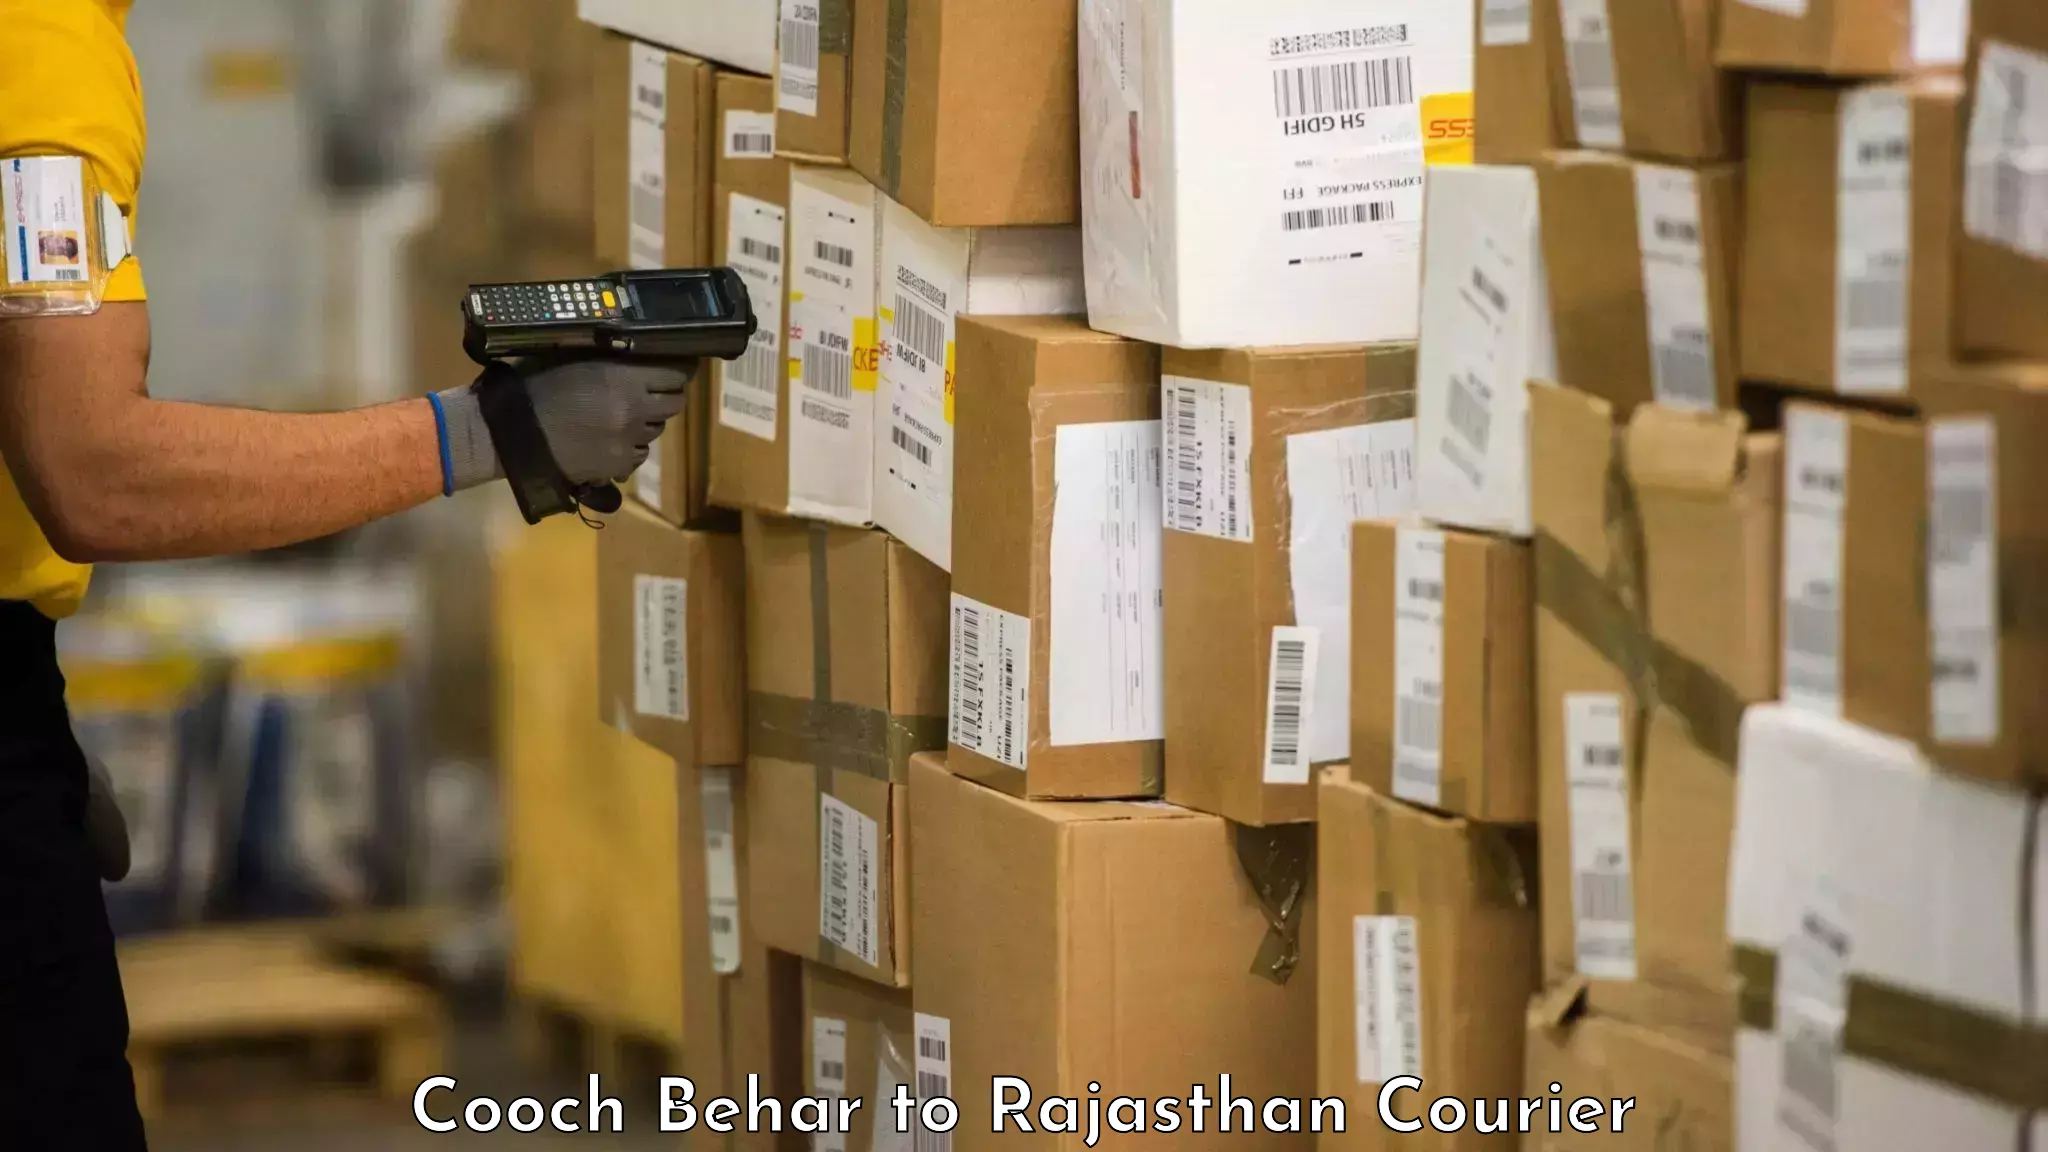 Door-to-door baggage service Cooch Behar to Bandikui